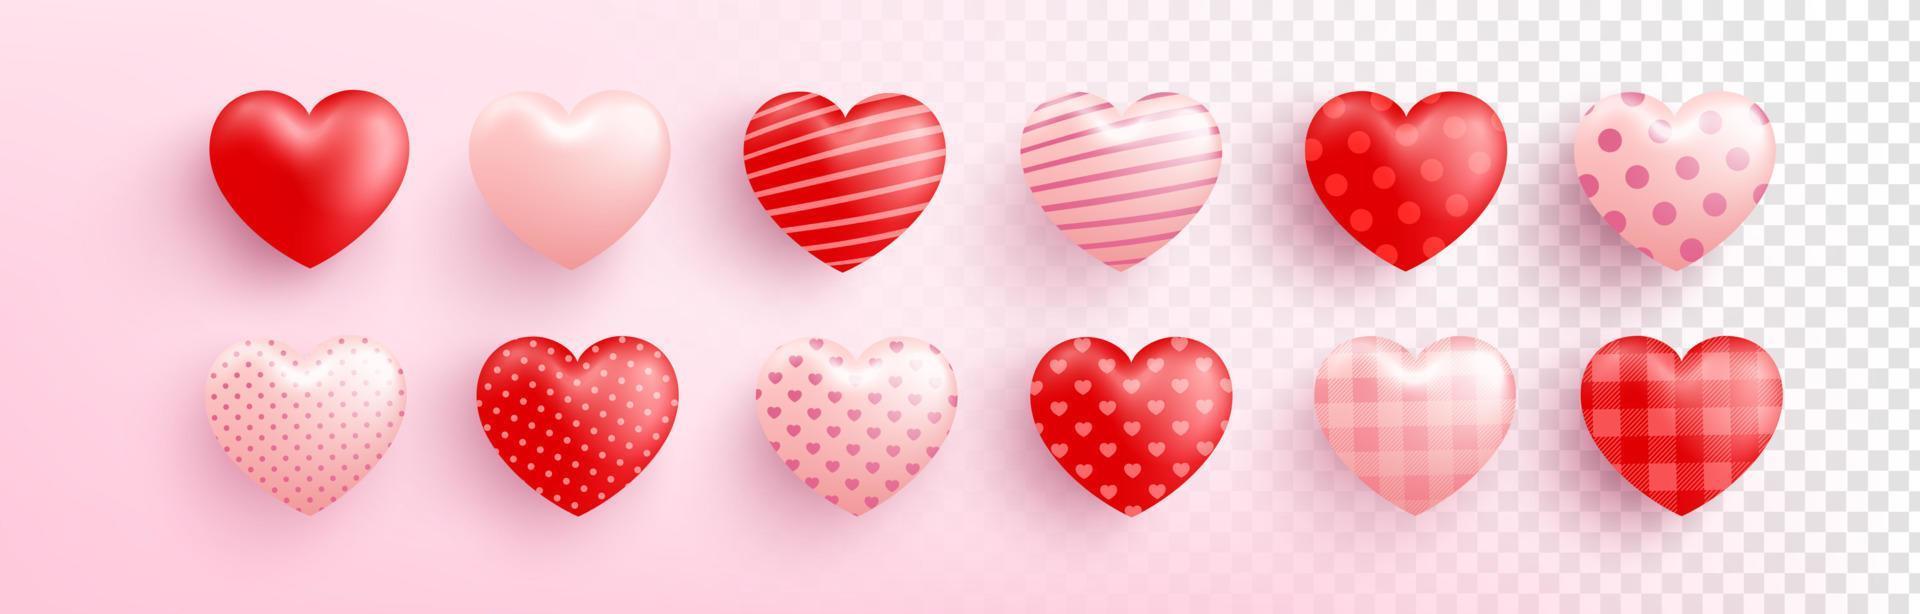 rotes und rosa süßes Herz mit verschiedenen Mustern auf transparentem Hintergrund. süßes Herz für Liebe und Valentinstag template.vector Illustration Eps 10 vektor